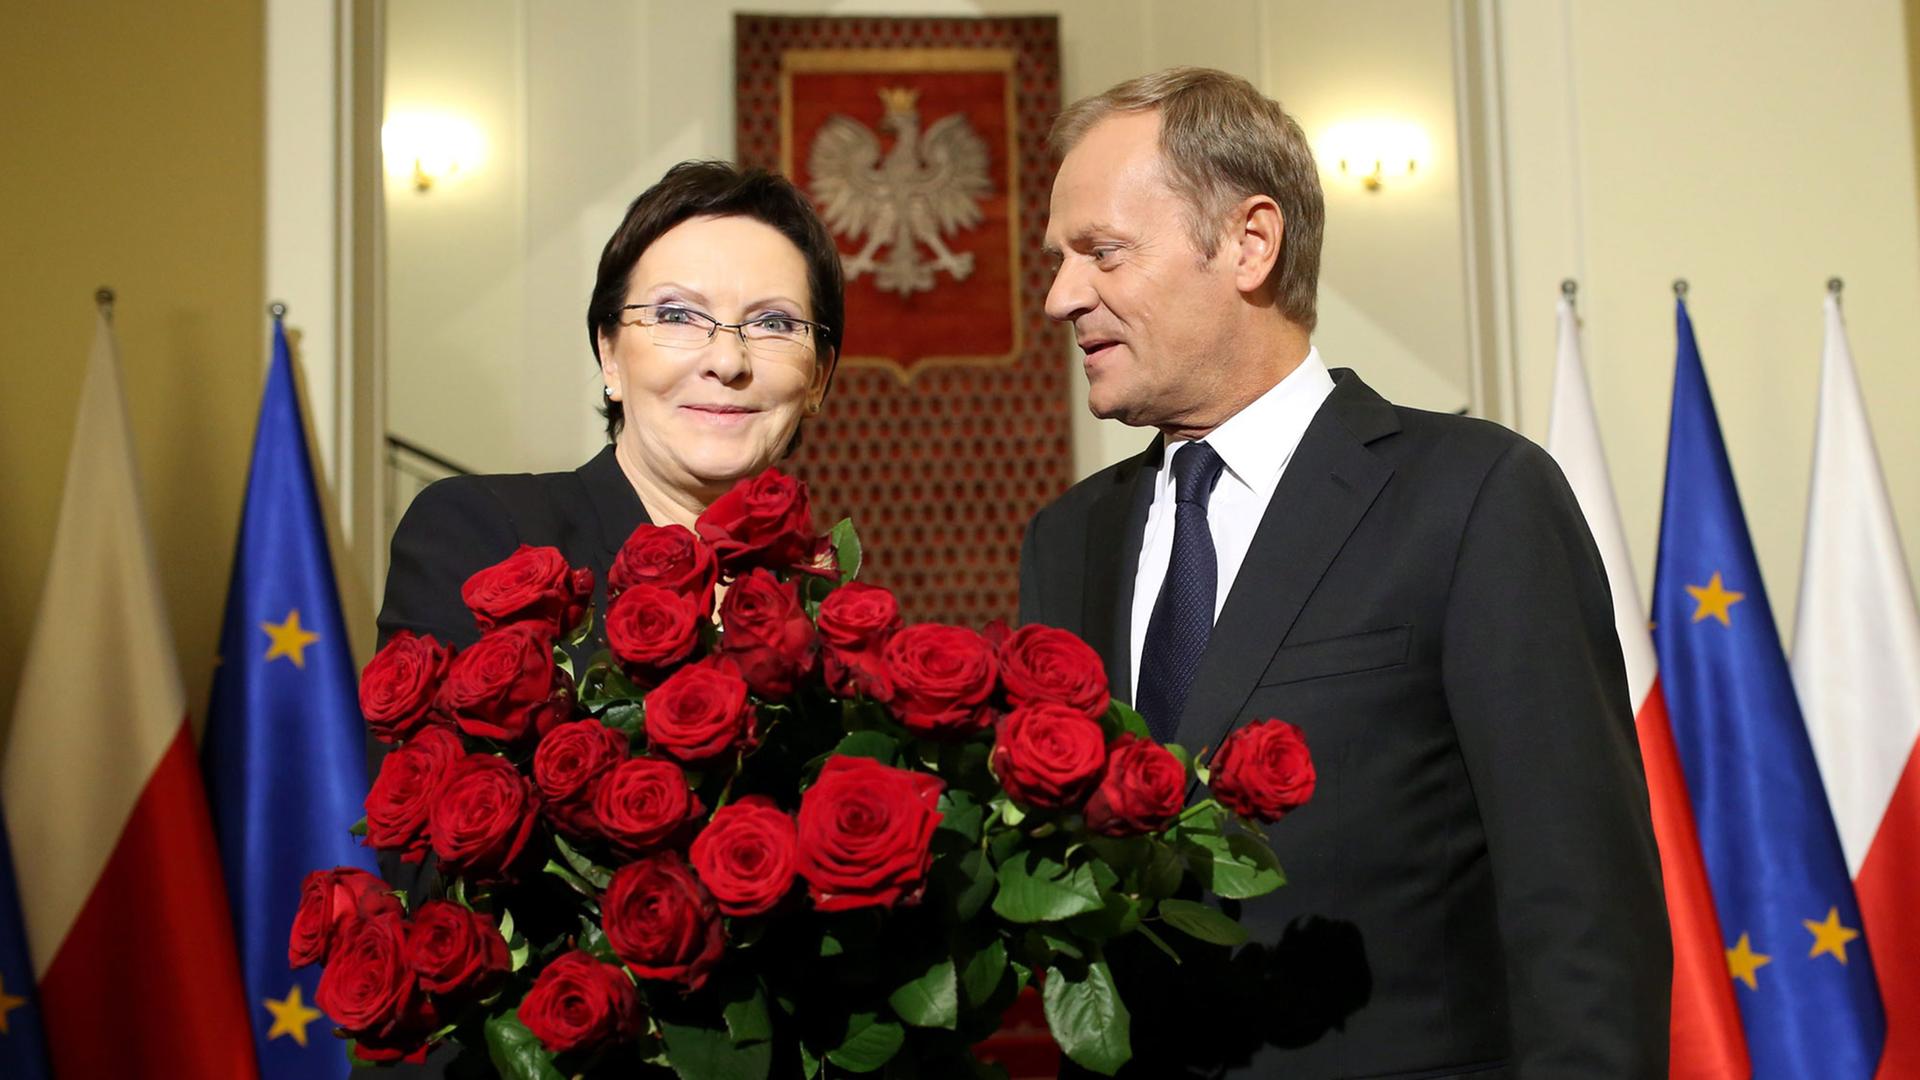 Der scheidende polnische Ministerpräsident Donald Tusk (r.) steht neben seiner Nachfolgerin Ewa Kopacz, die einen Rosenstrauß in den Händen hält.